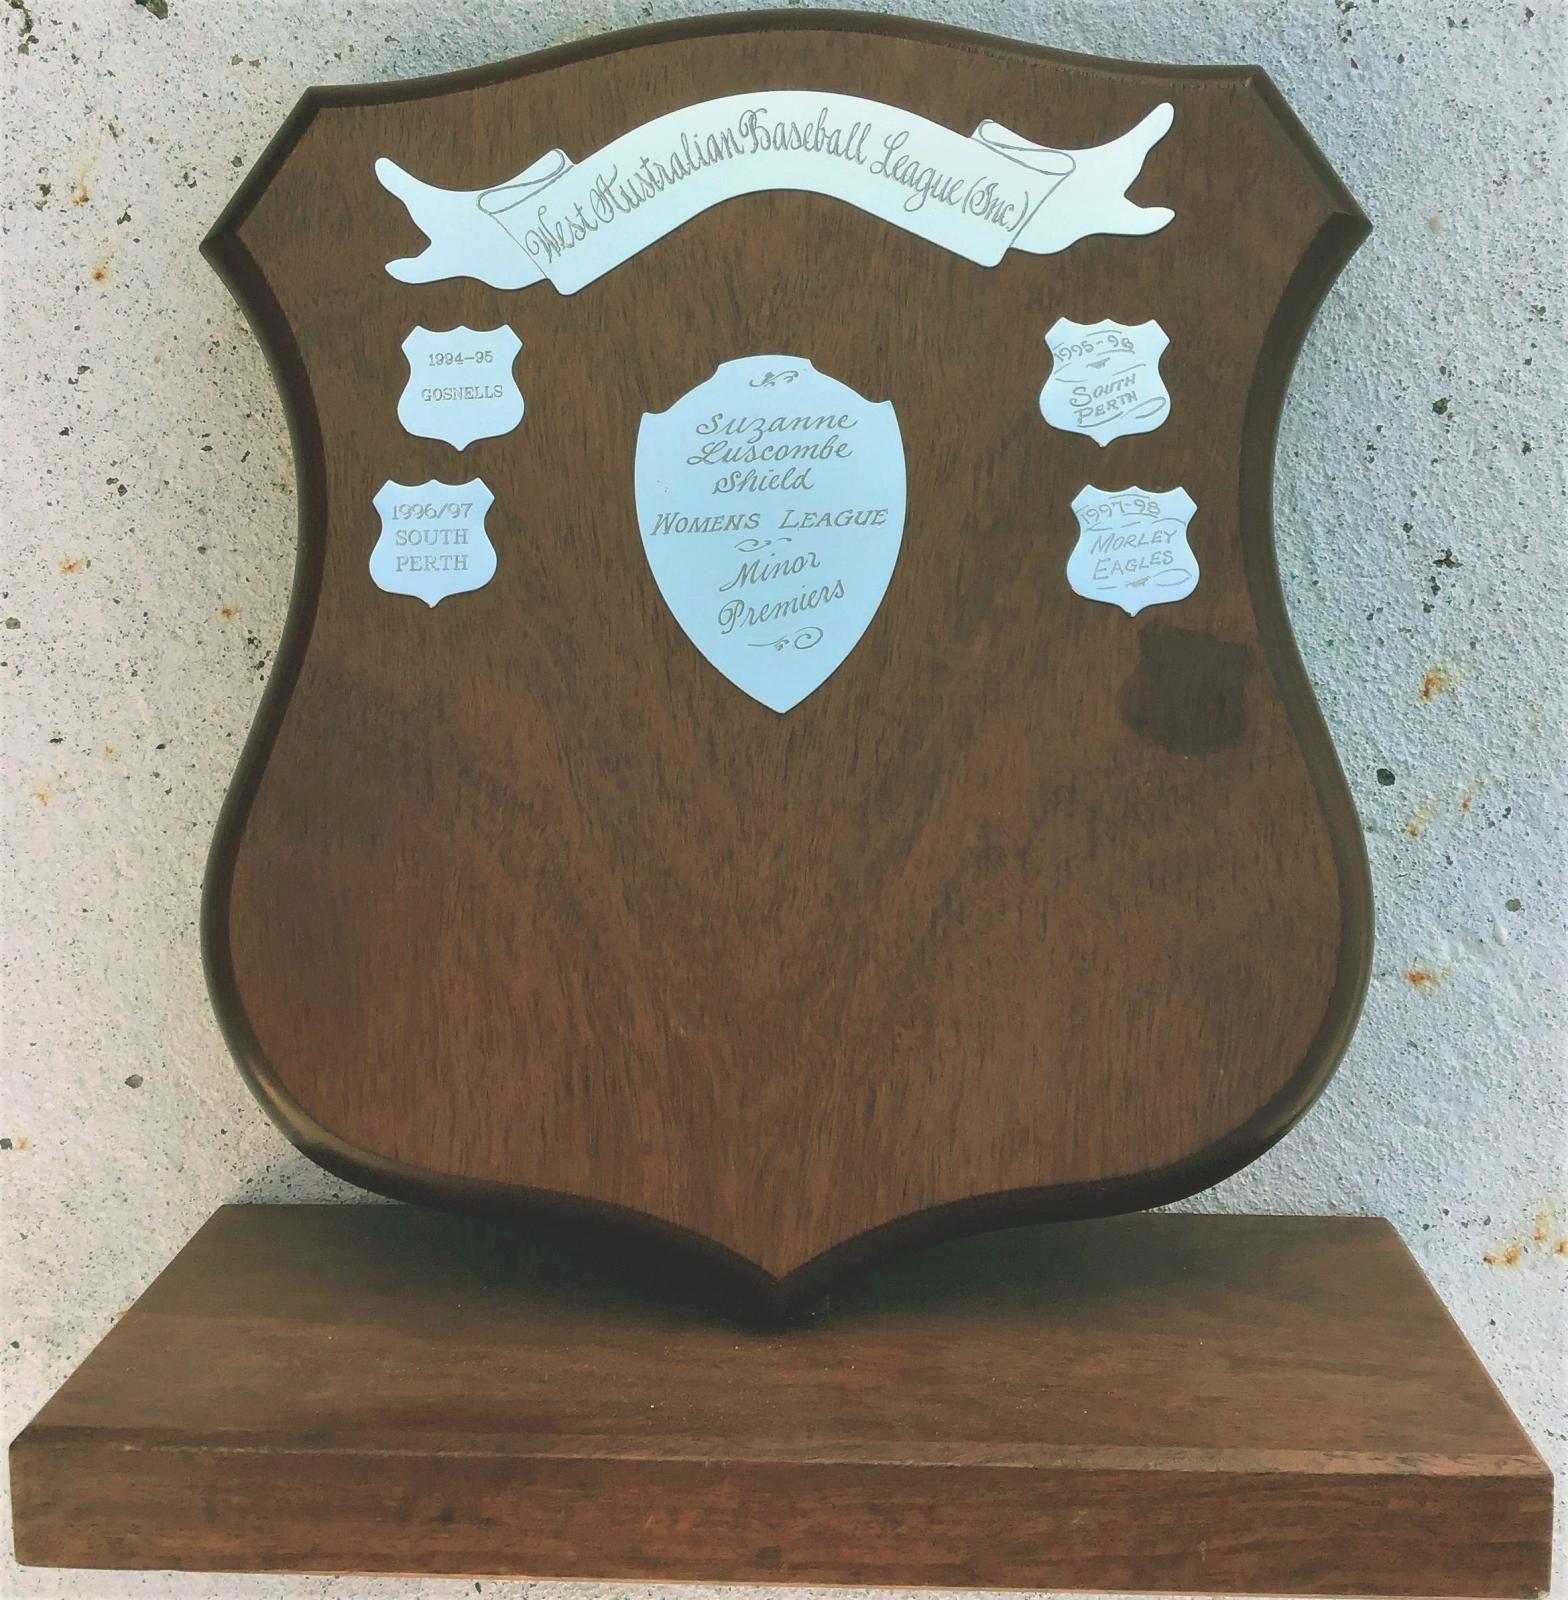 Suzanne Luscombe Shield - West Australian Baseball League Women's League Minor Premiers trophy